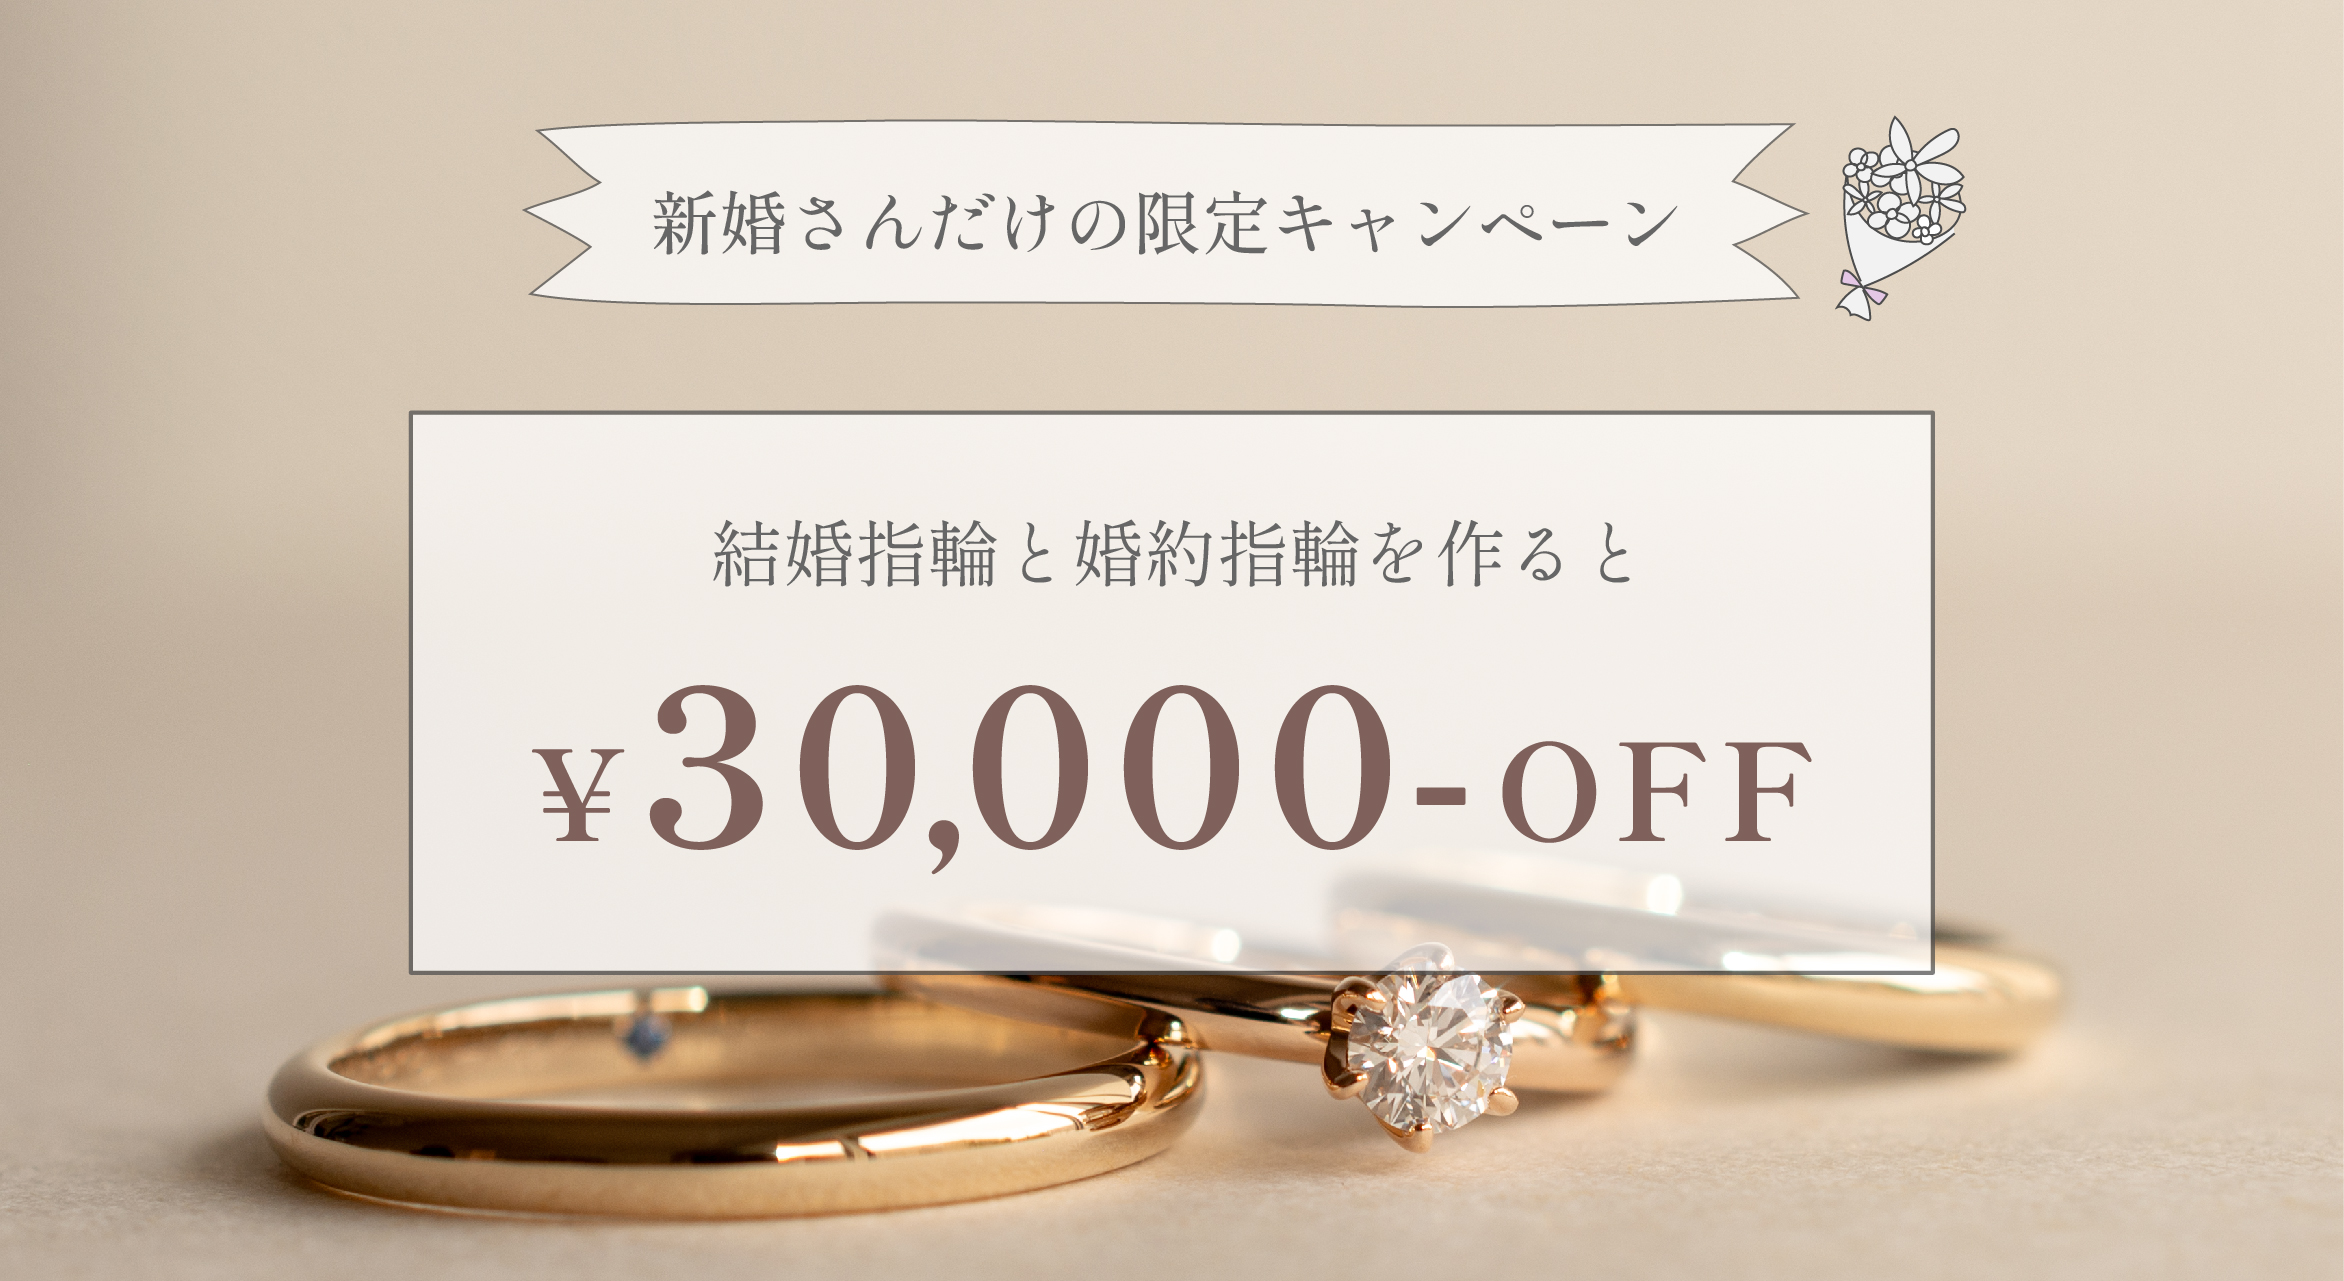 結婚指輪と婚約指輪を作ると30,000円割引,お得なキャンペーン